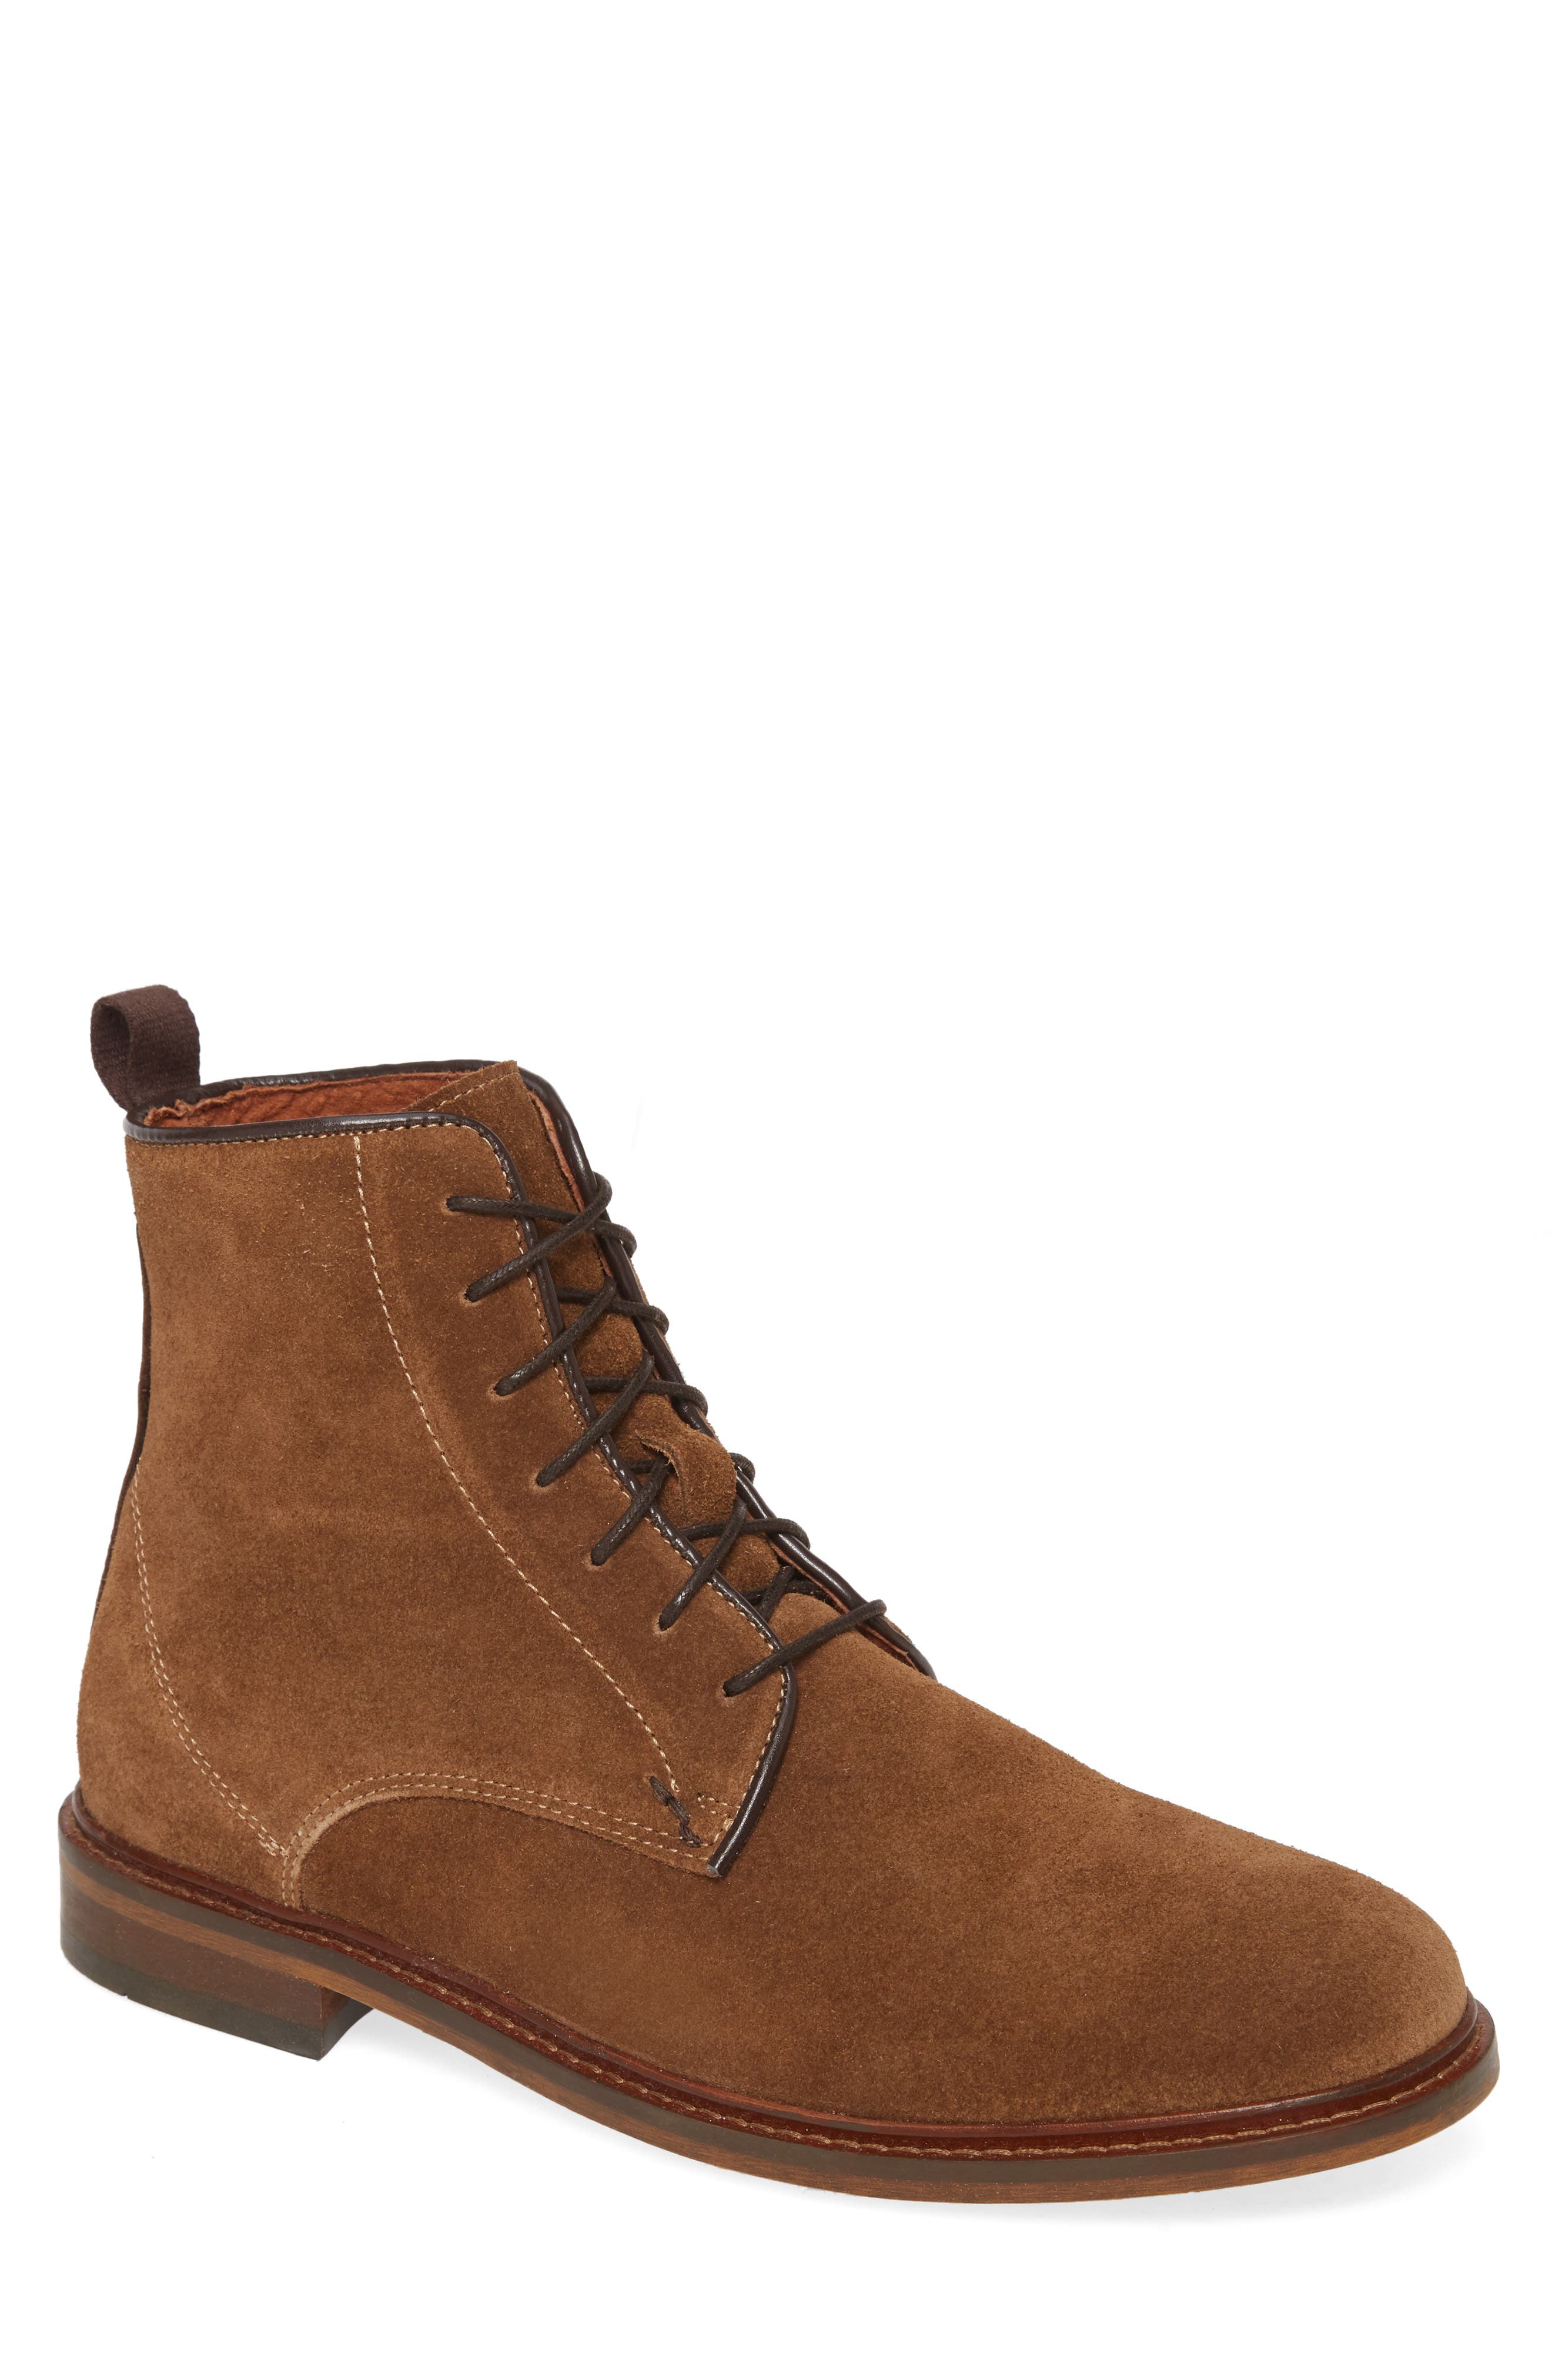 Sale: Men's Shoe The Bear Boots | Nordstrom